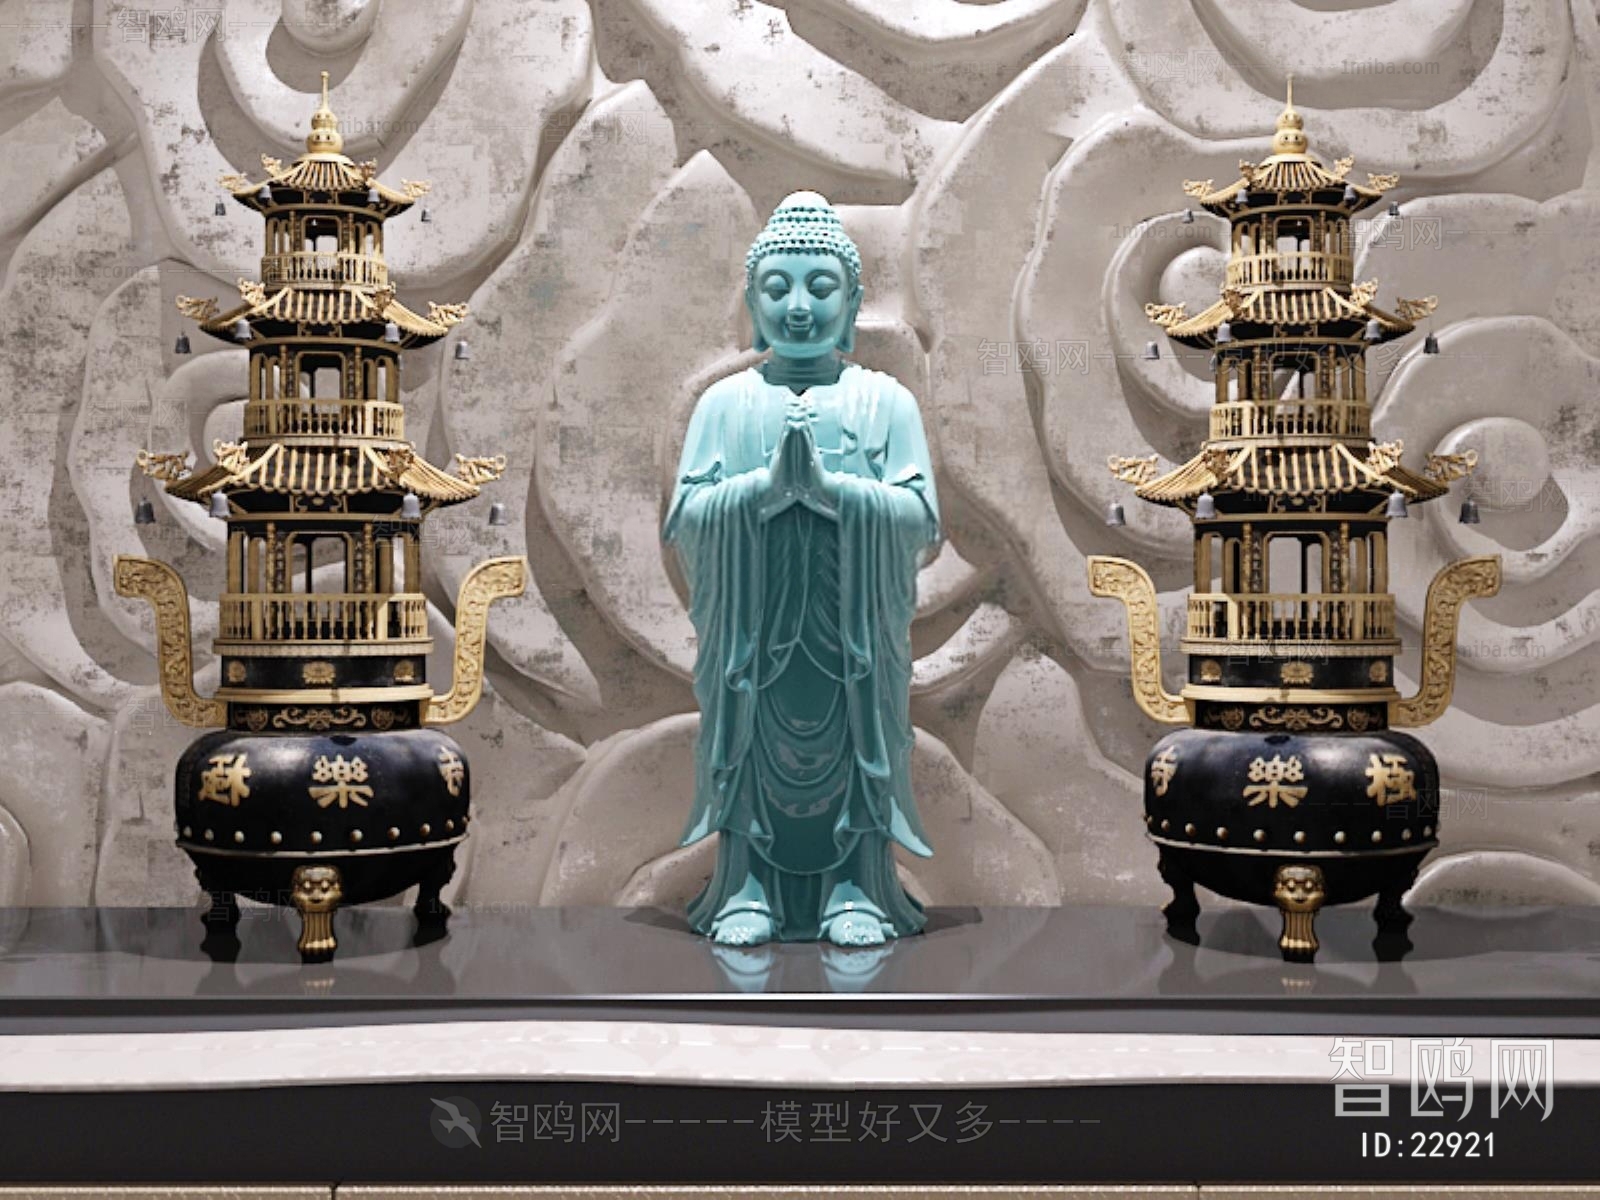 中式香炉塔摆件如来合十雕塑